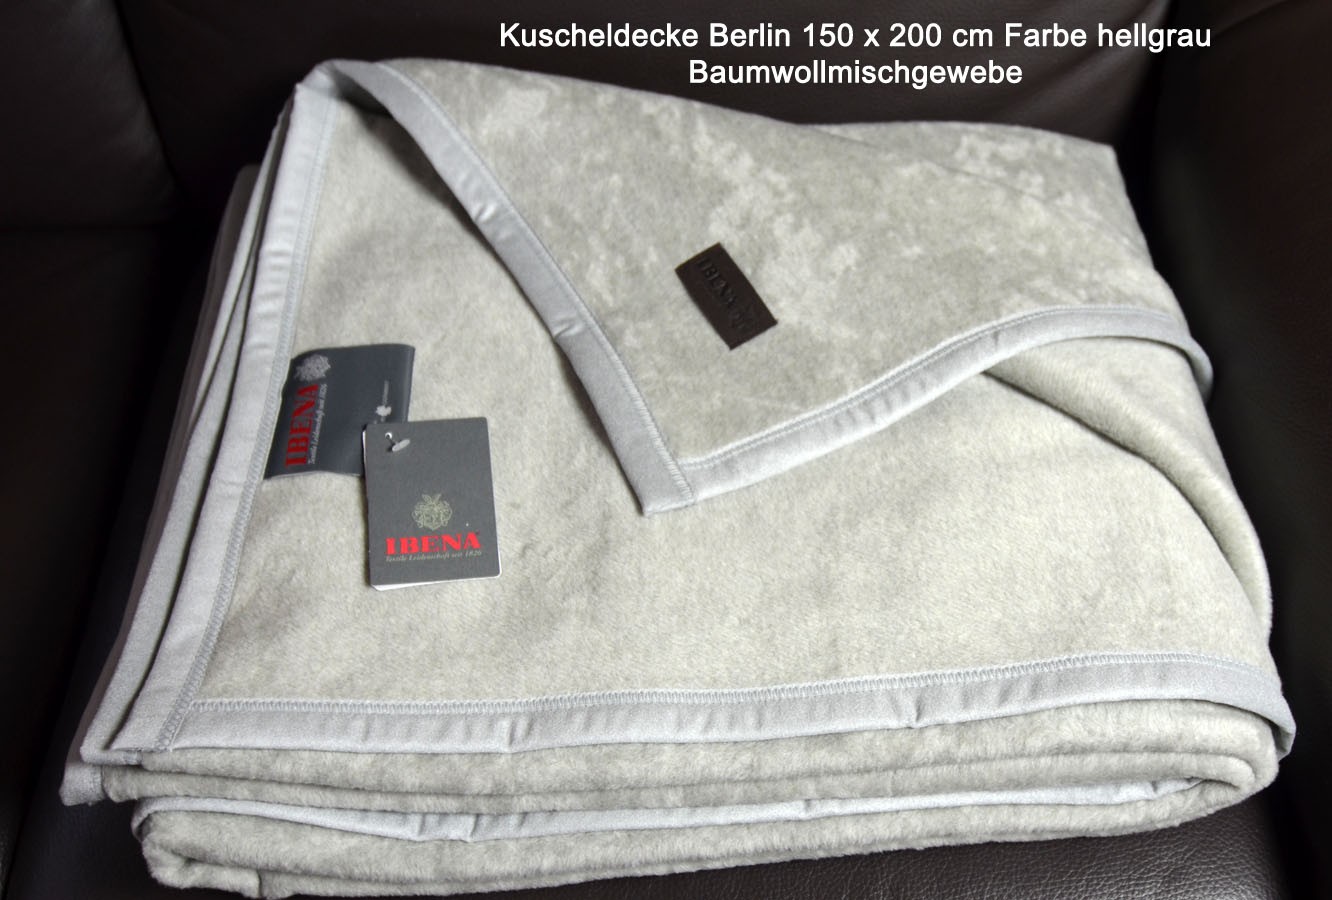 Kuscheldecke Berlin 150 x 200 cm mittellgrau Baumwollmischgewebe